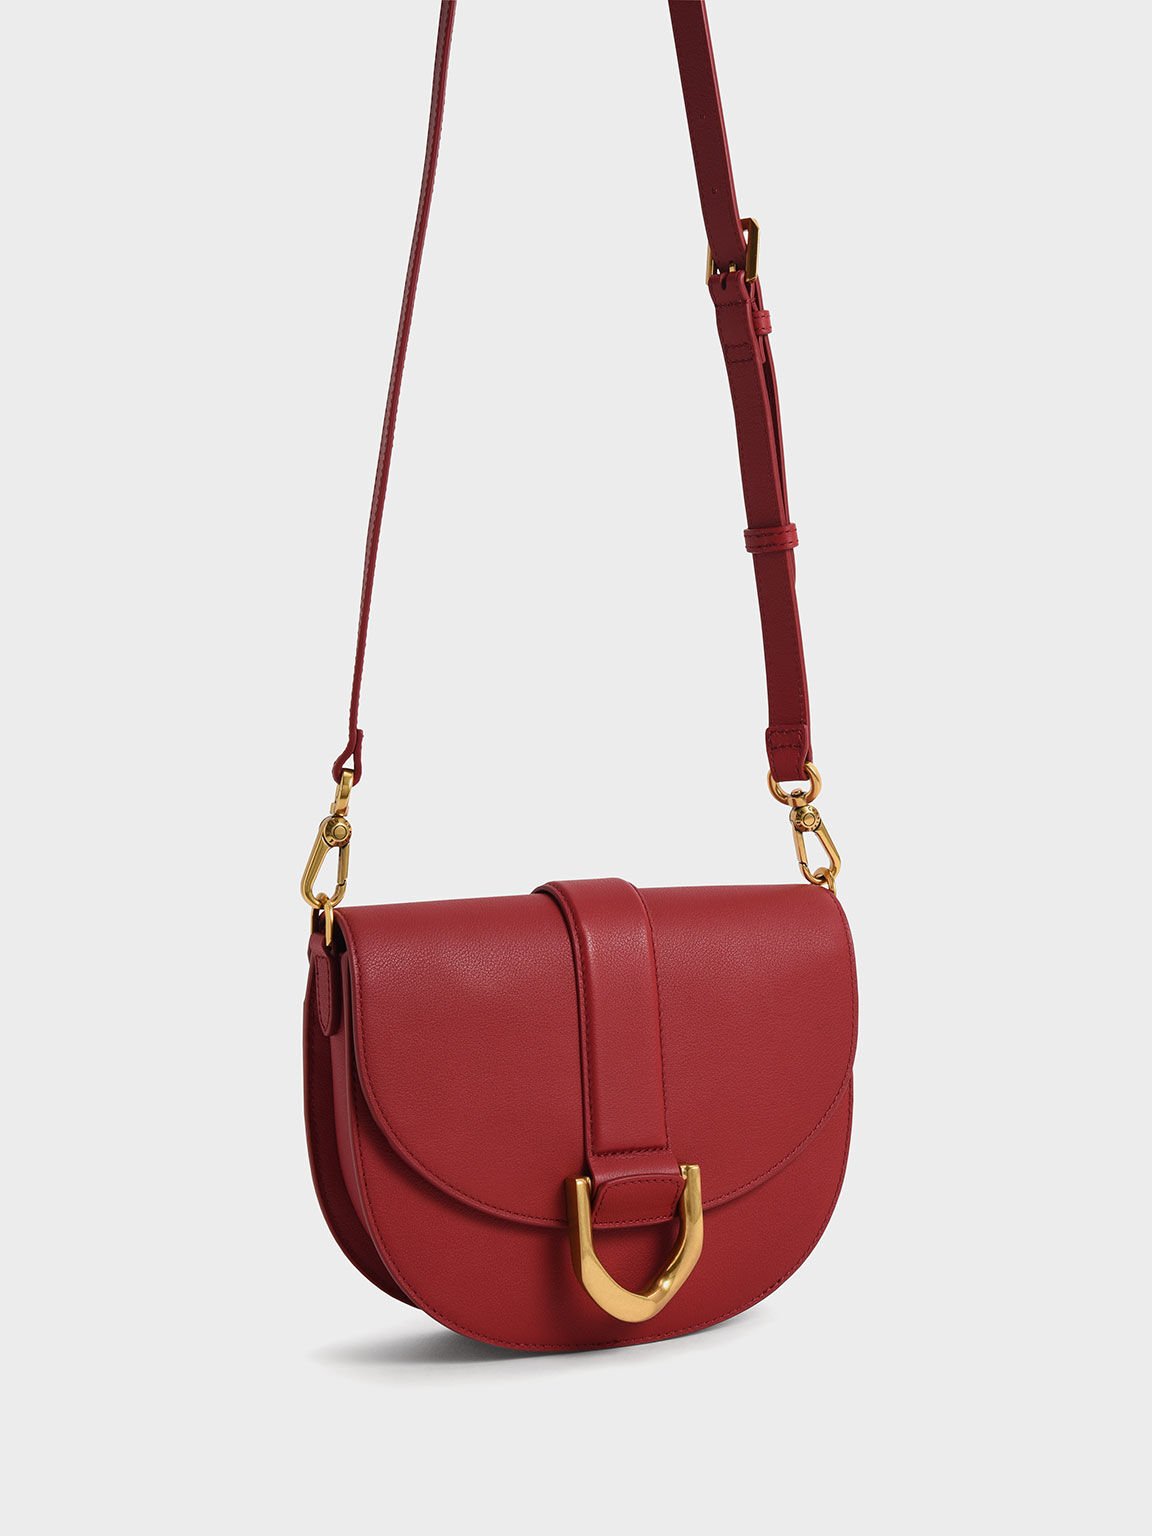 Gabine Leather Saddle Bag, Red, hi-res